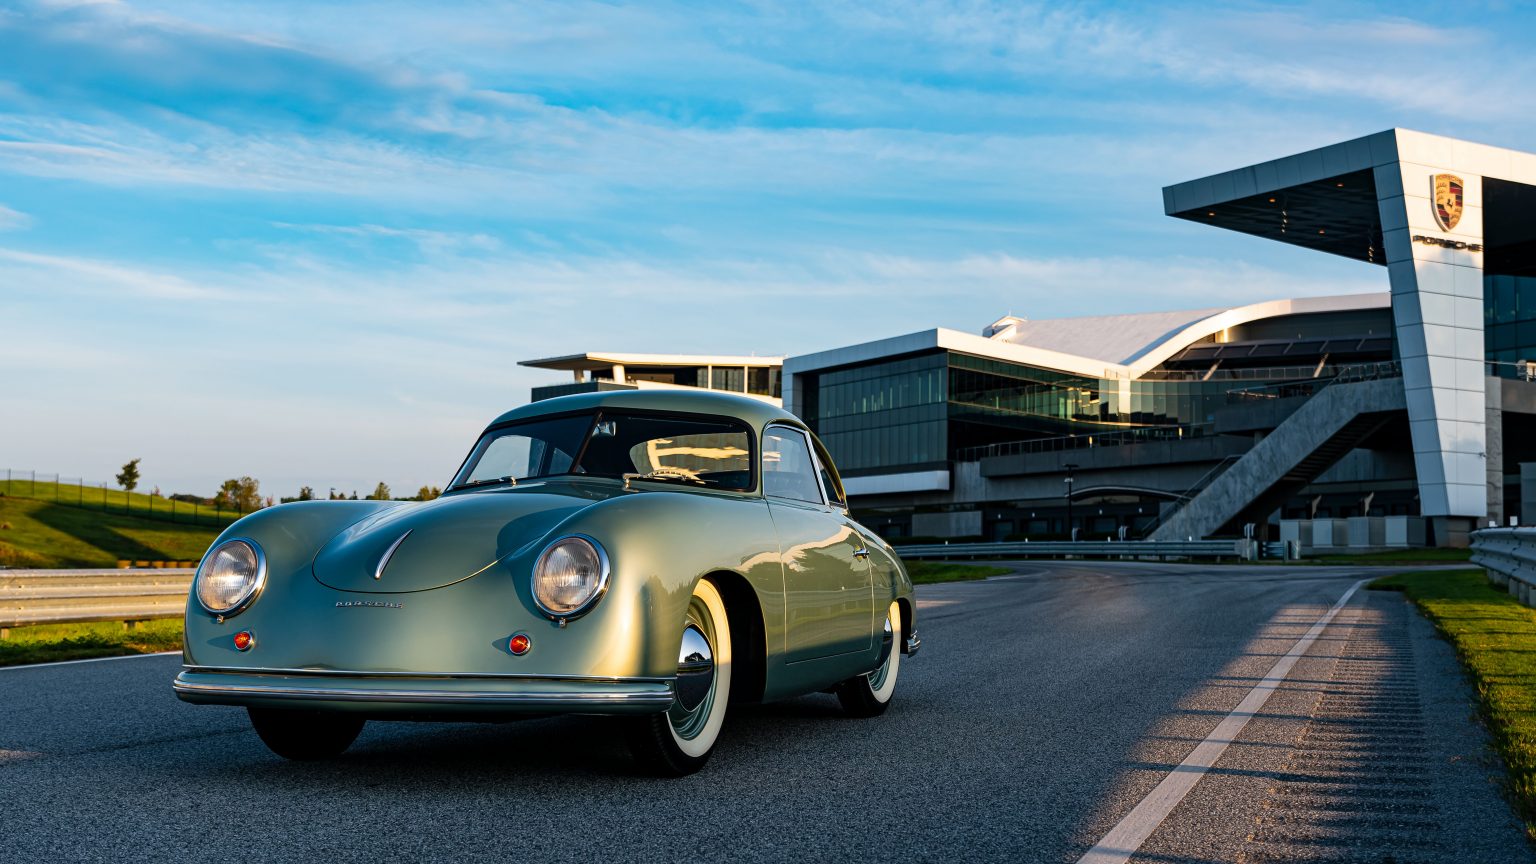 1950-Porsche-356-1.1 - 1 - Porsche 70 Years North America